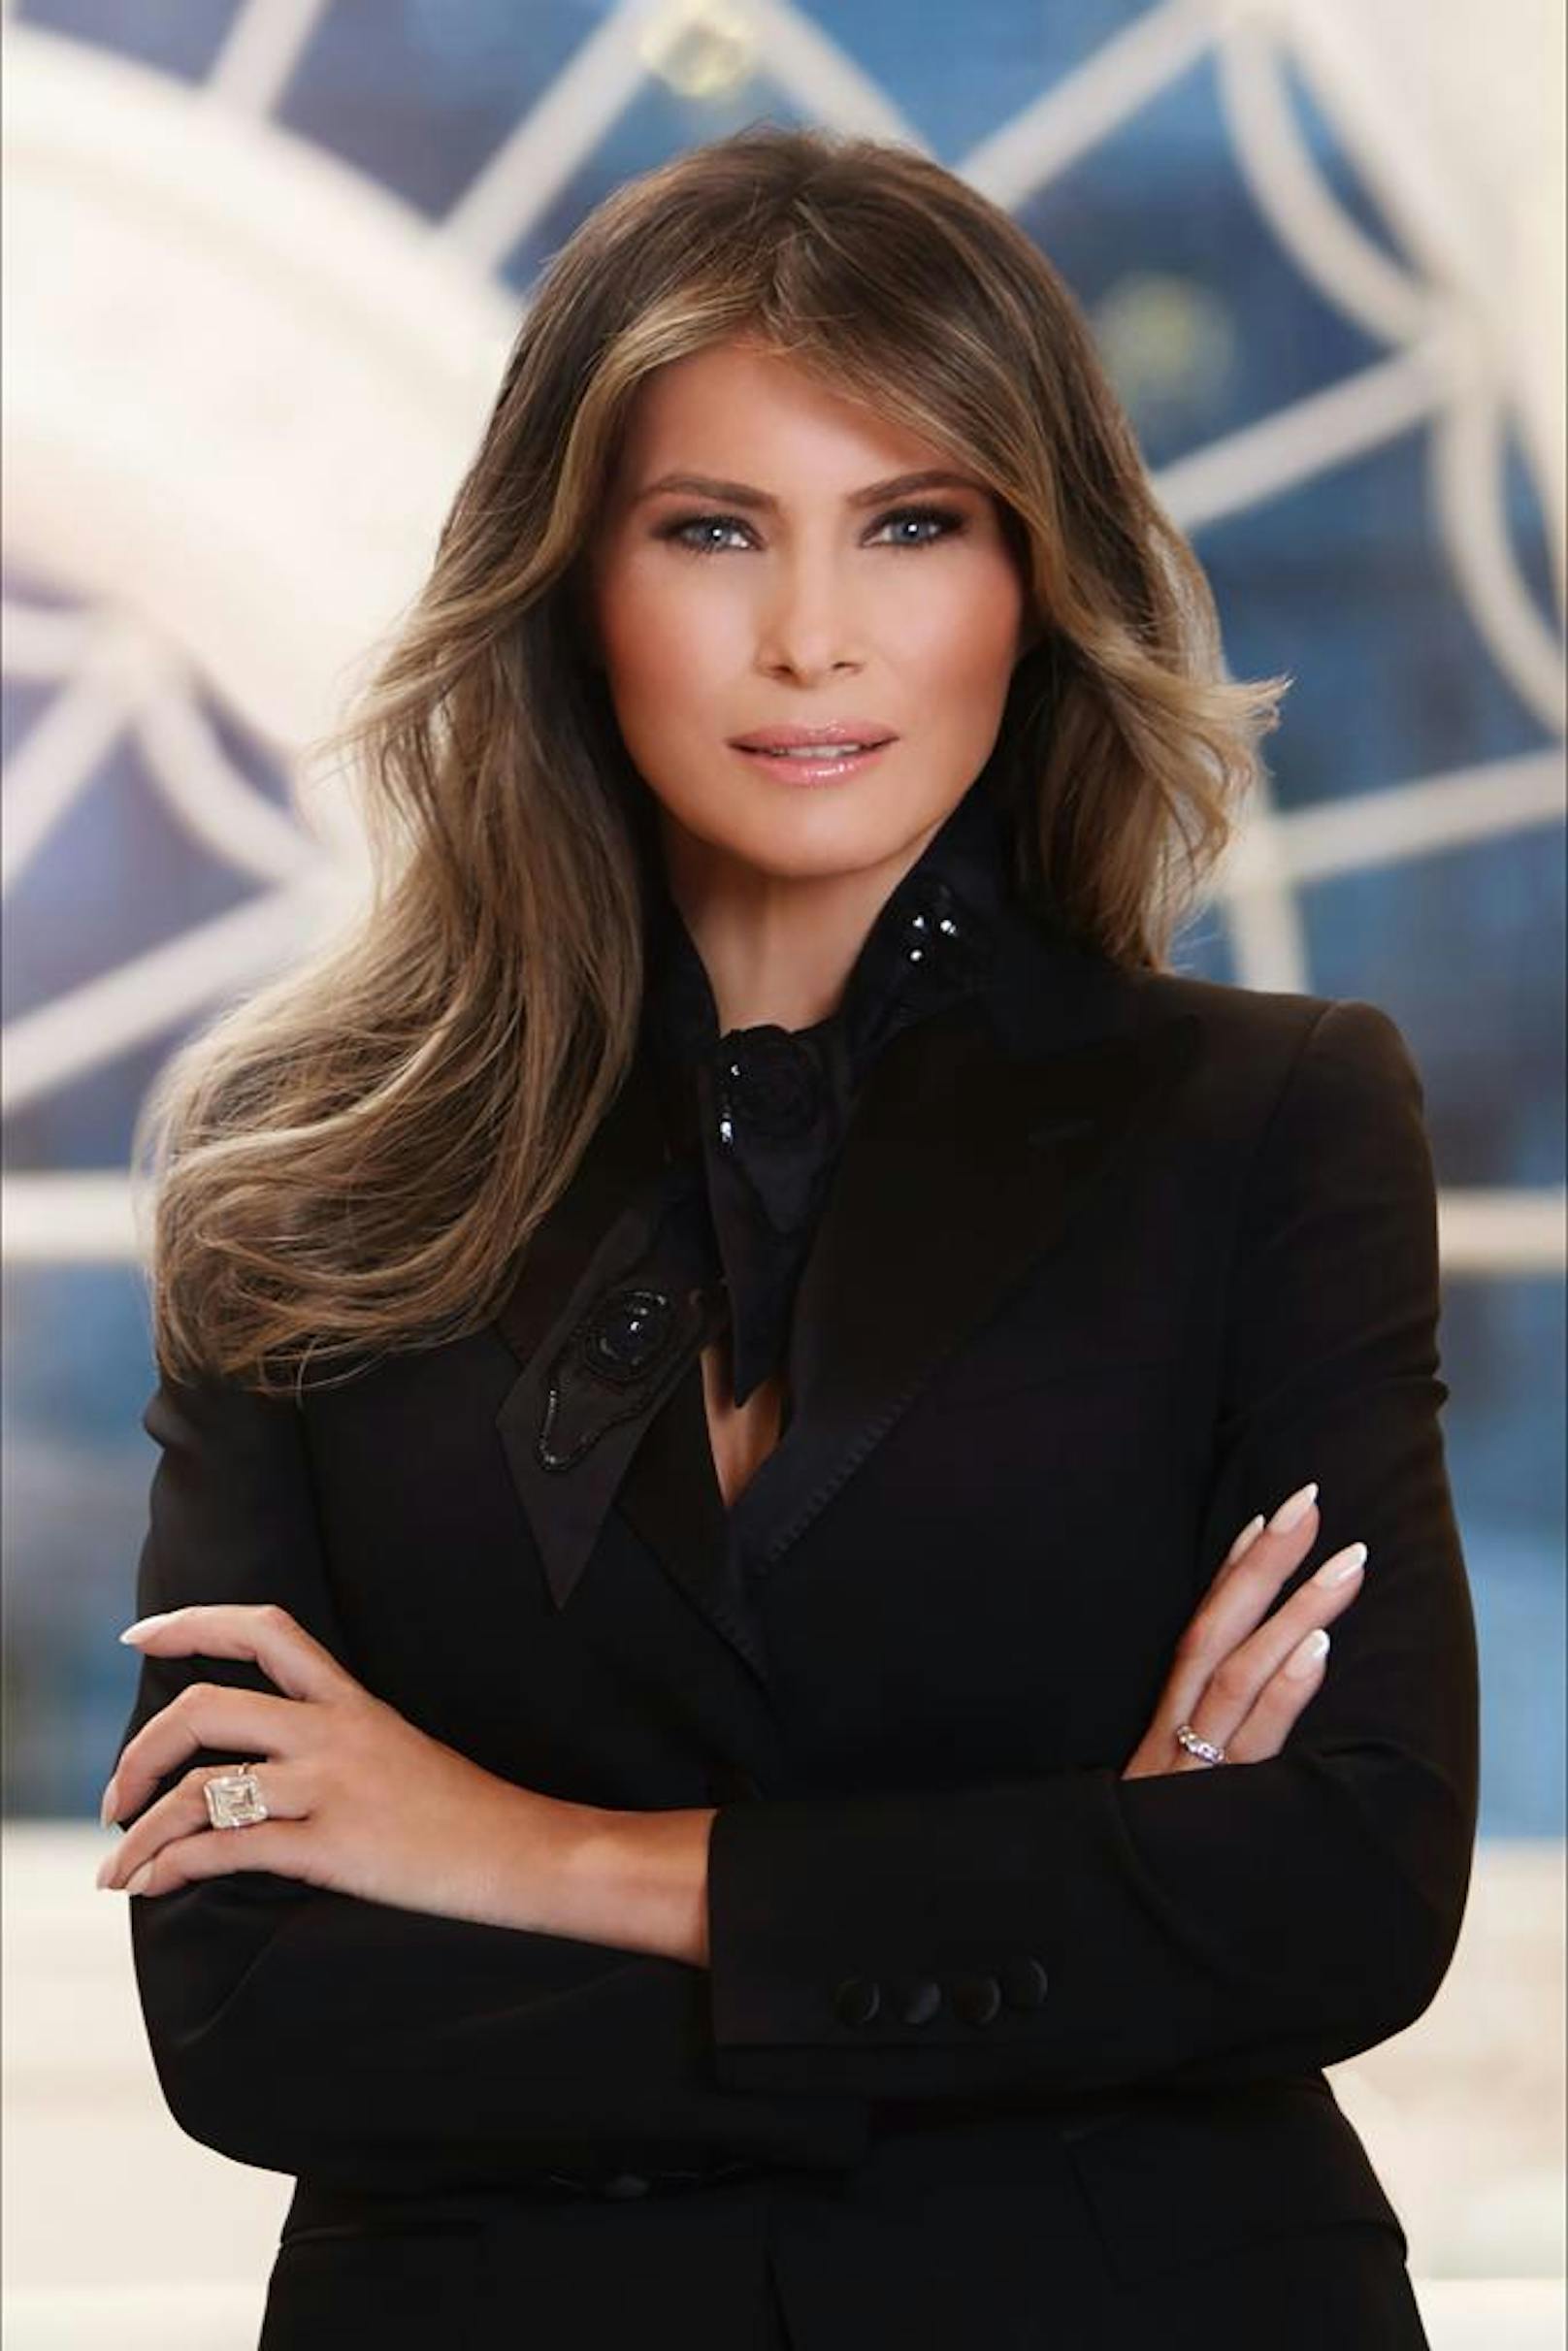 Viel Botox, viel Photoshop: Melanie Trump auf ihrem offiziellen Porträtbild